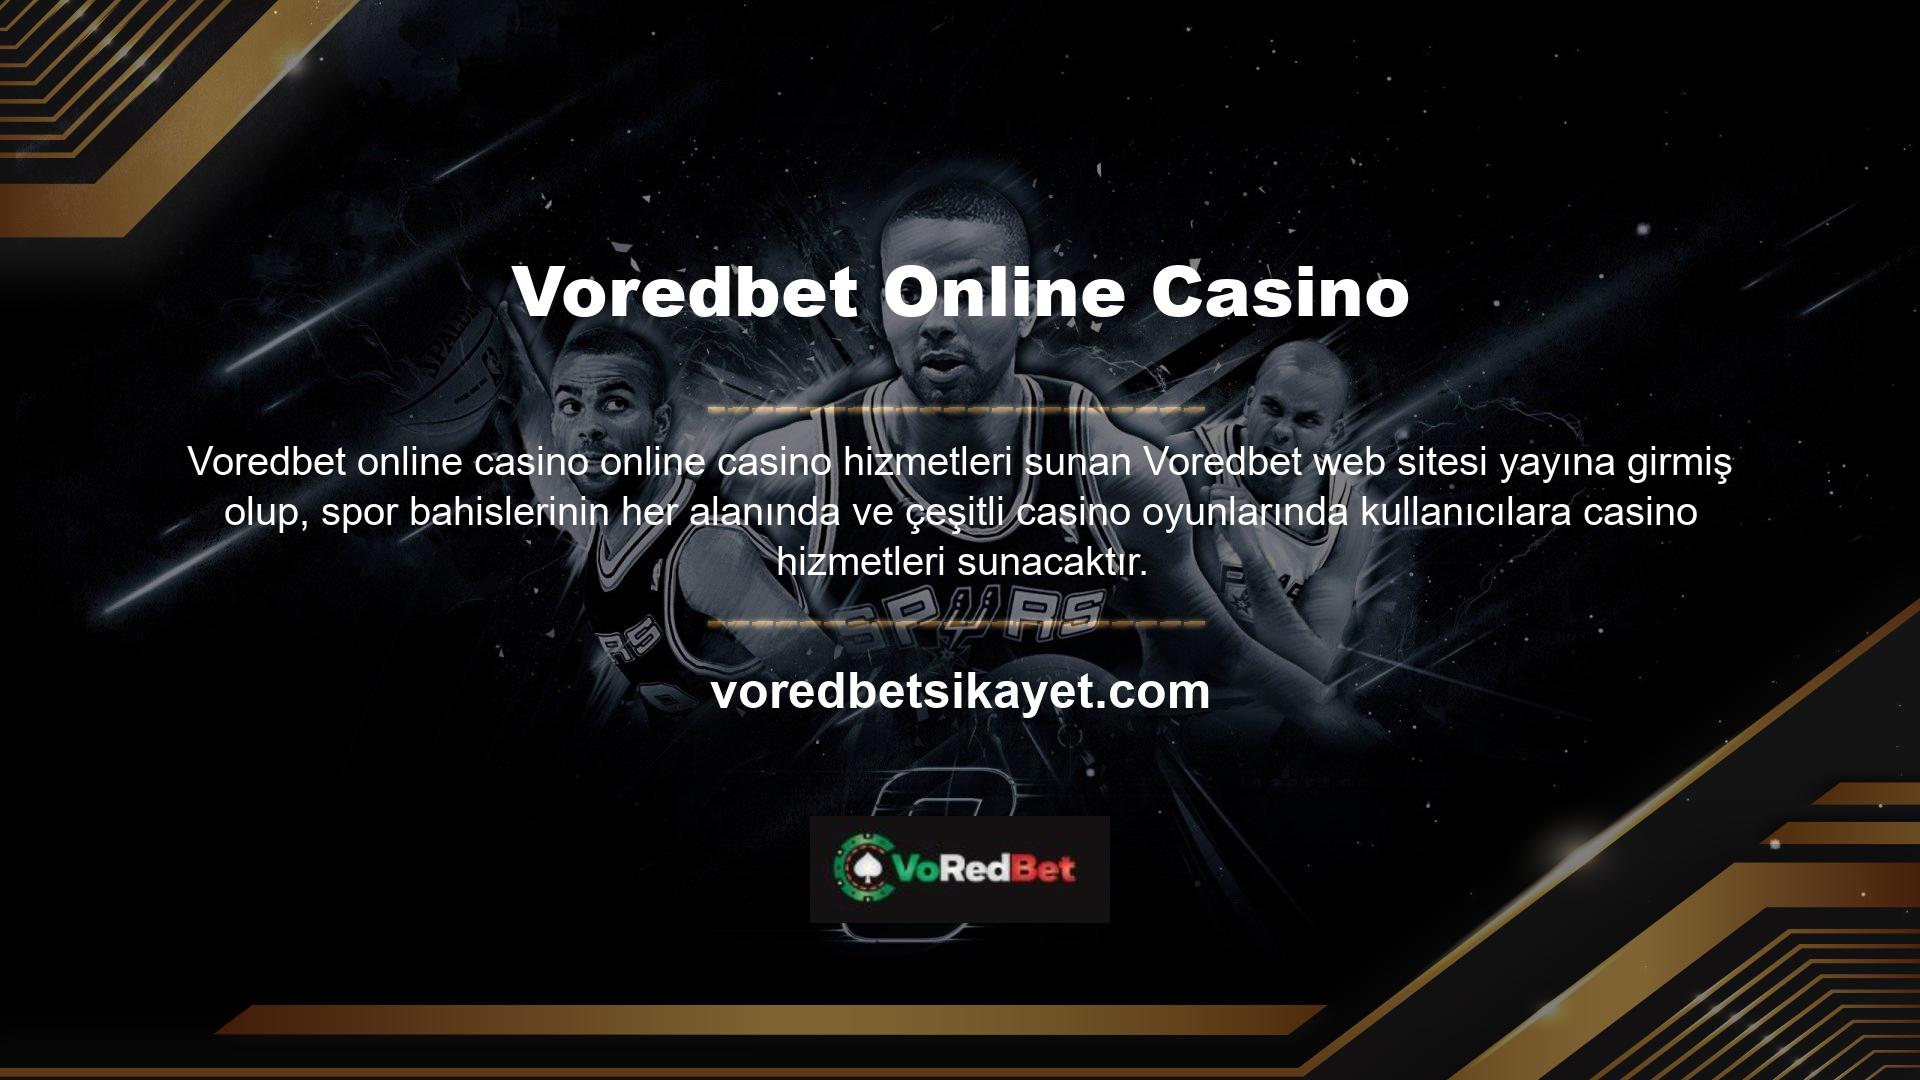 Voredbet üyesi kullanıcılar, Voredbet web sitesindeki hesaplarına para aktarabilir ve bakiyeleri belirli bir tutarı aştığında oynamaya başlayabilirler